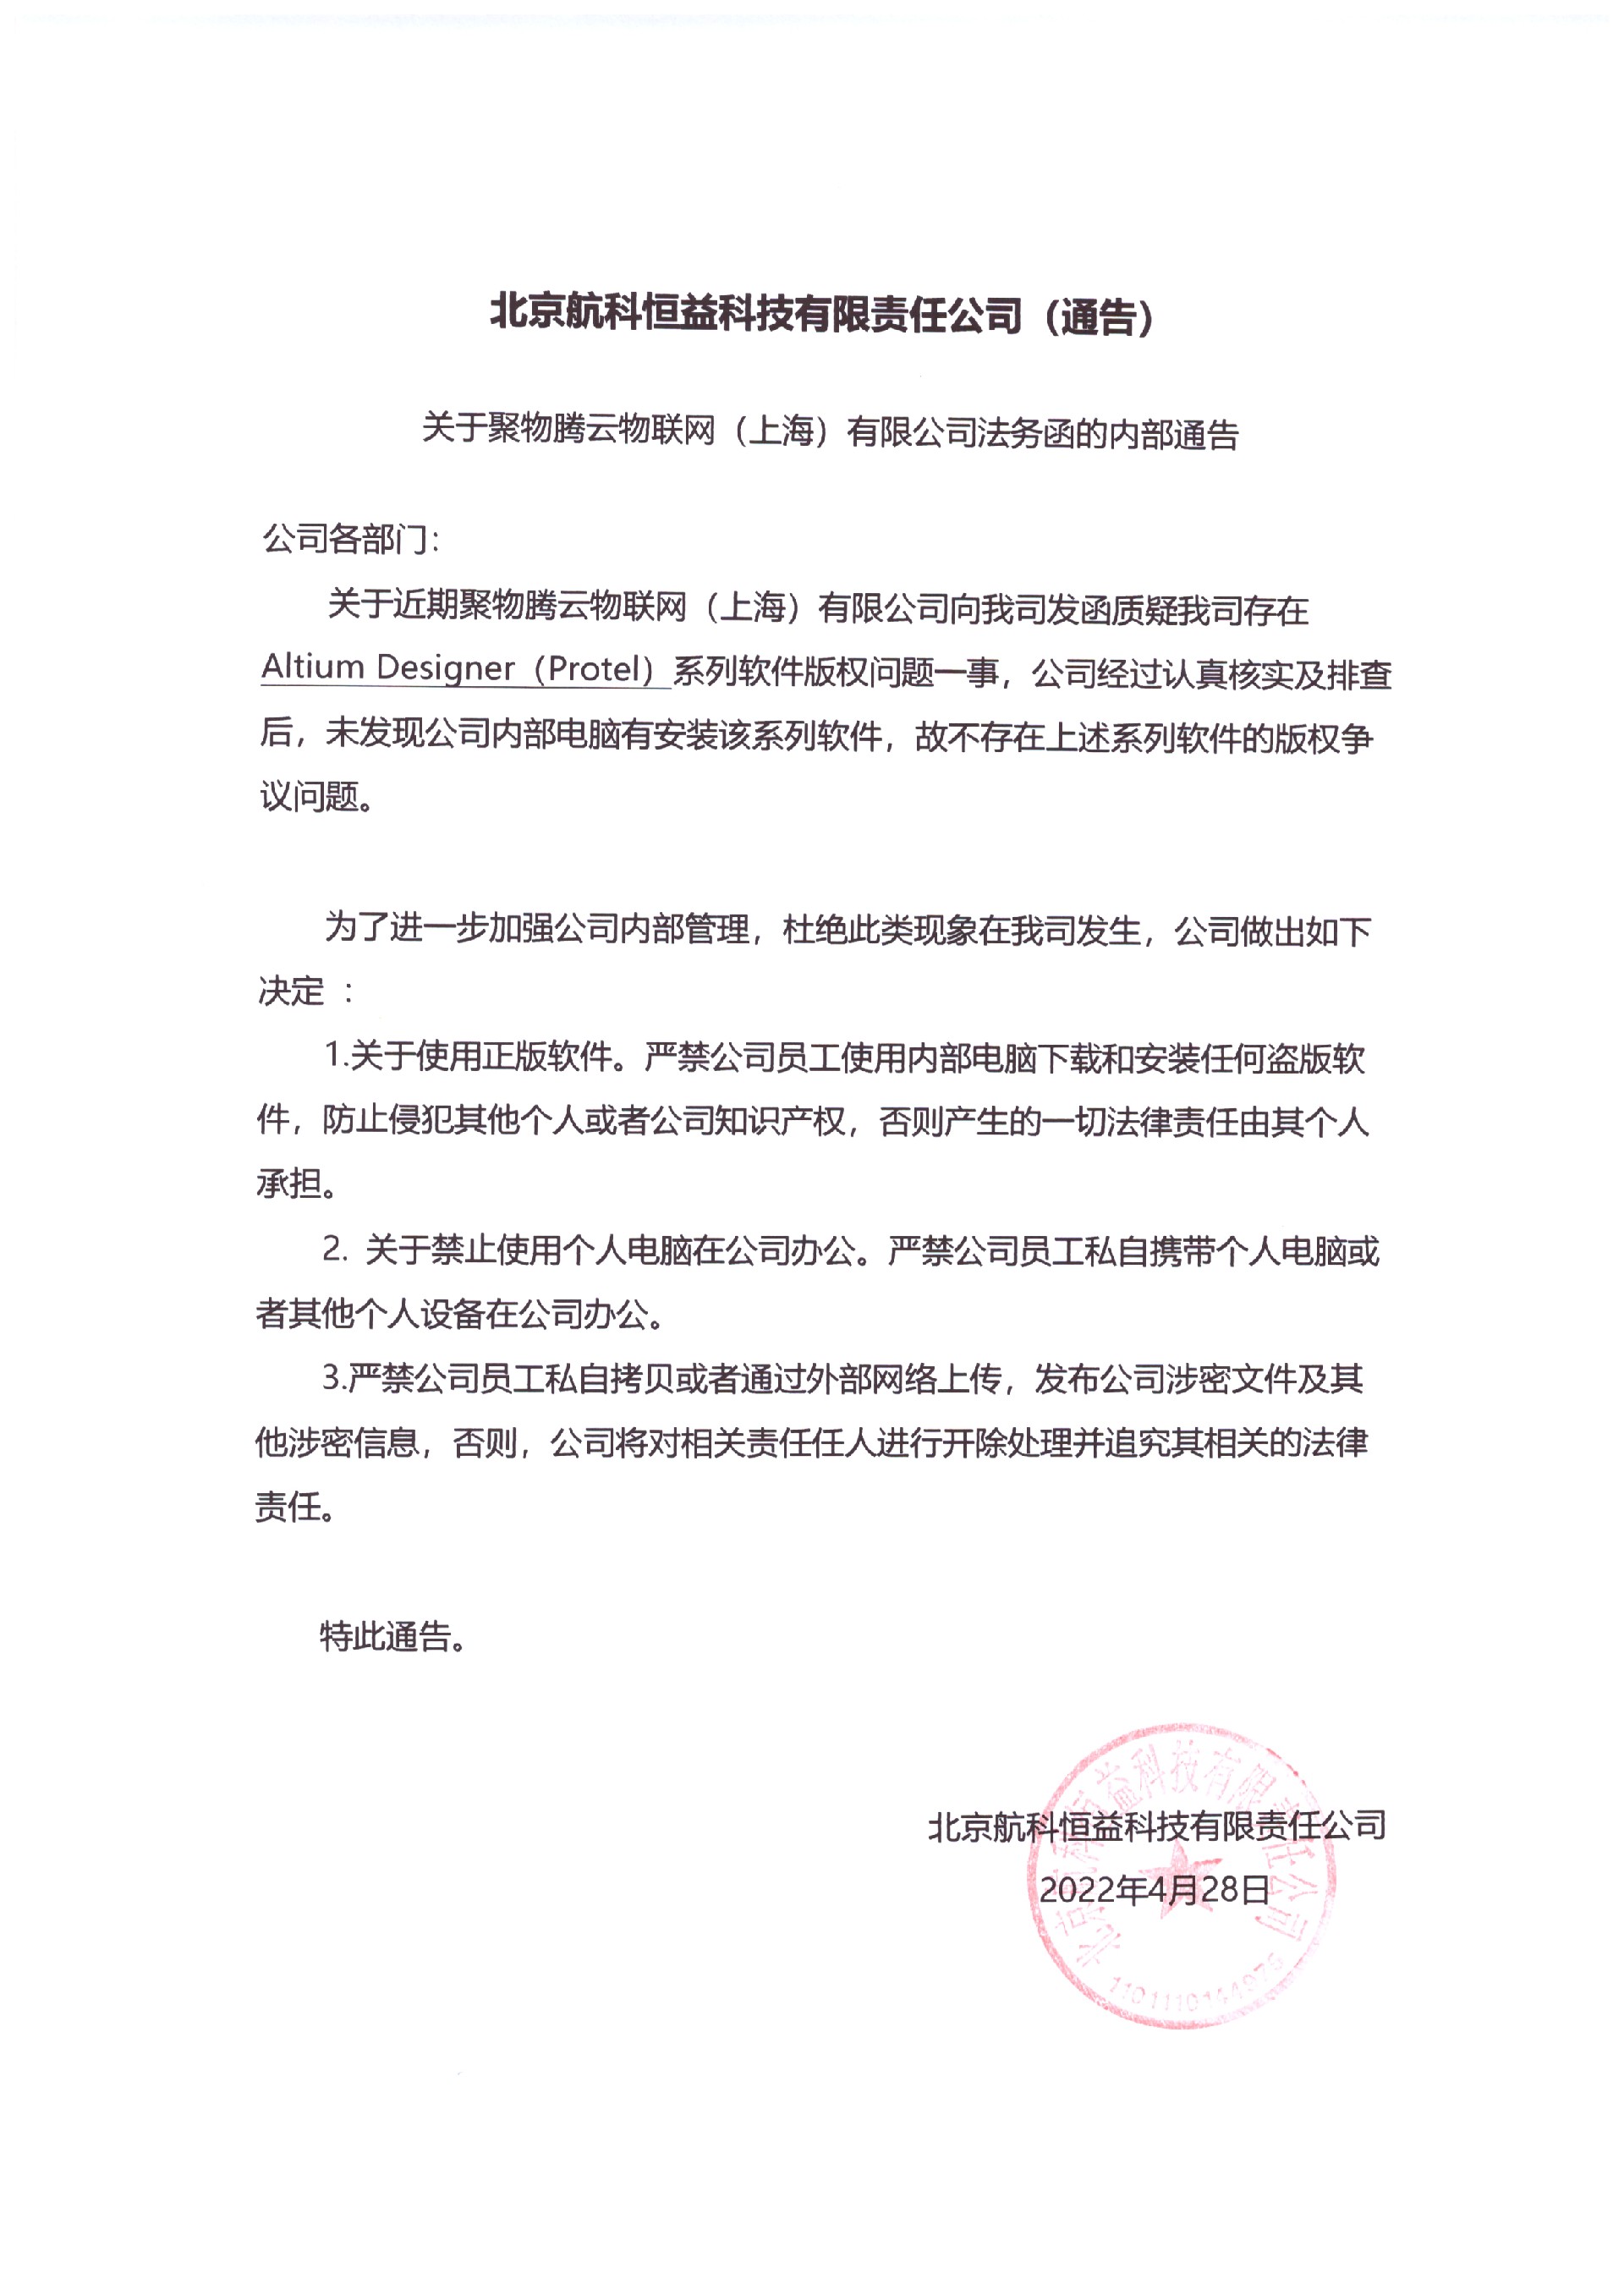 关于聚物腾云物联网（上海）有限公司法务函的内部通告.jpg